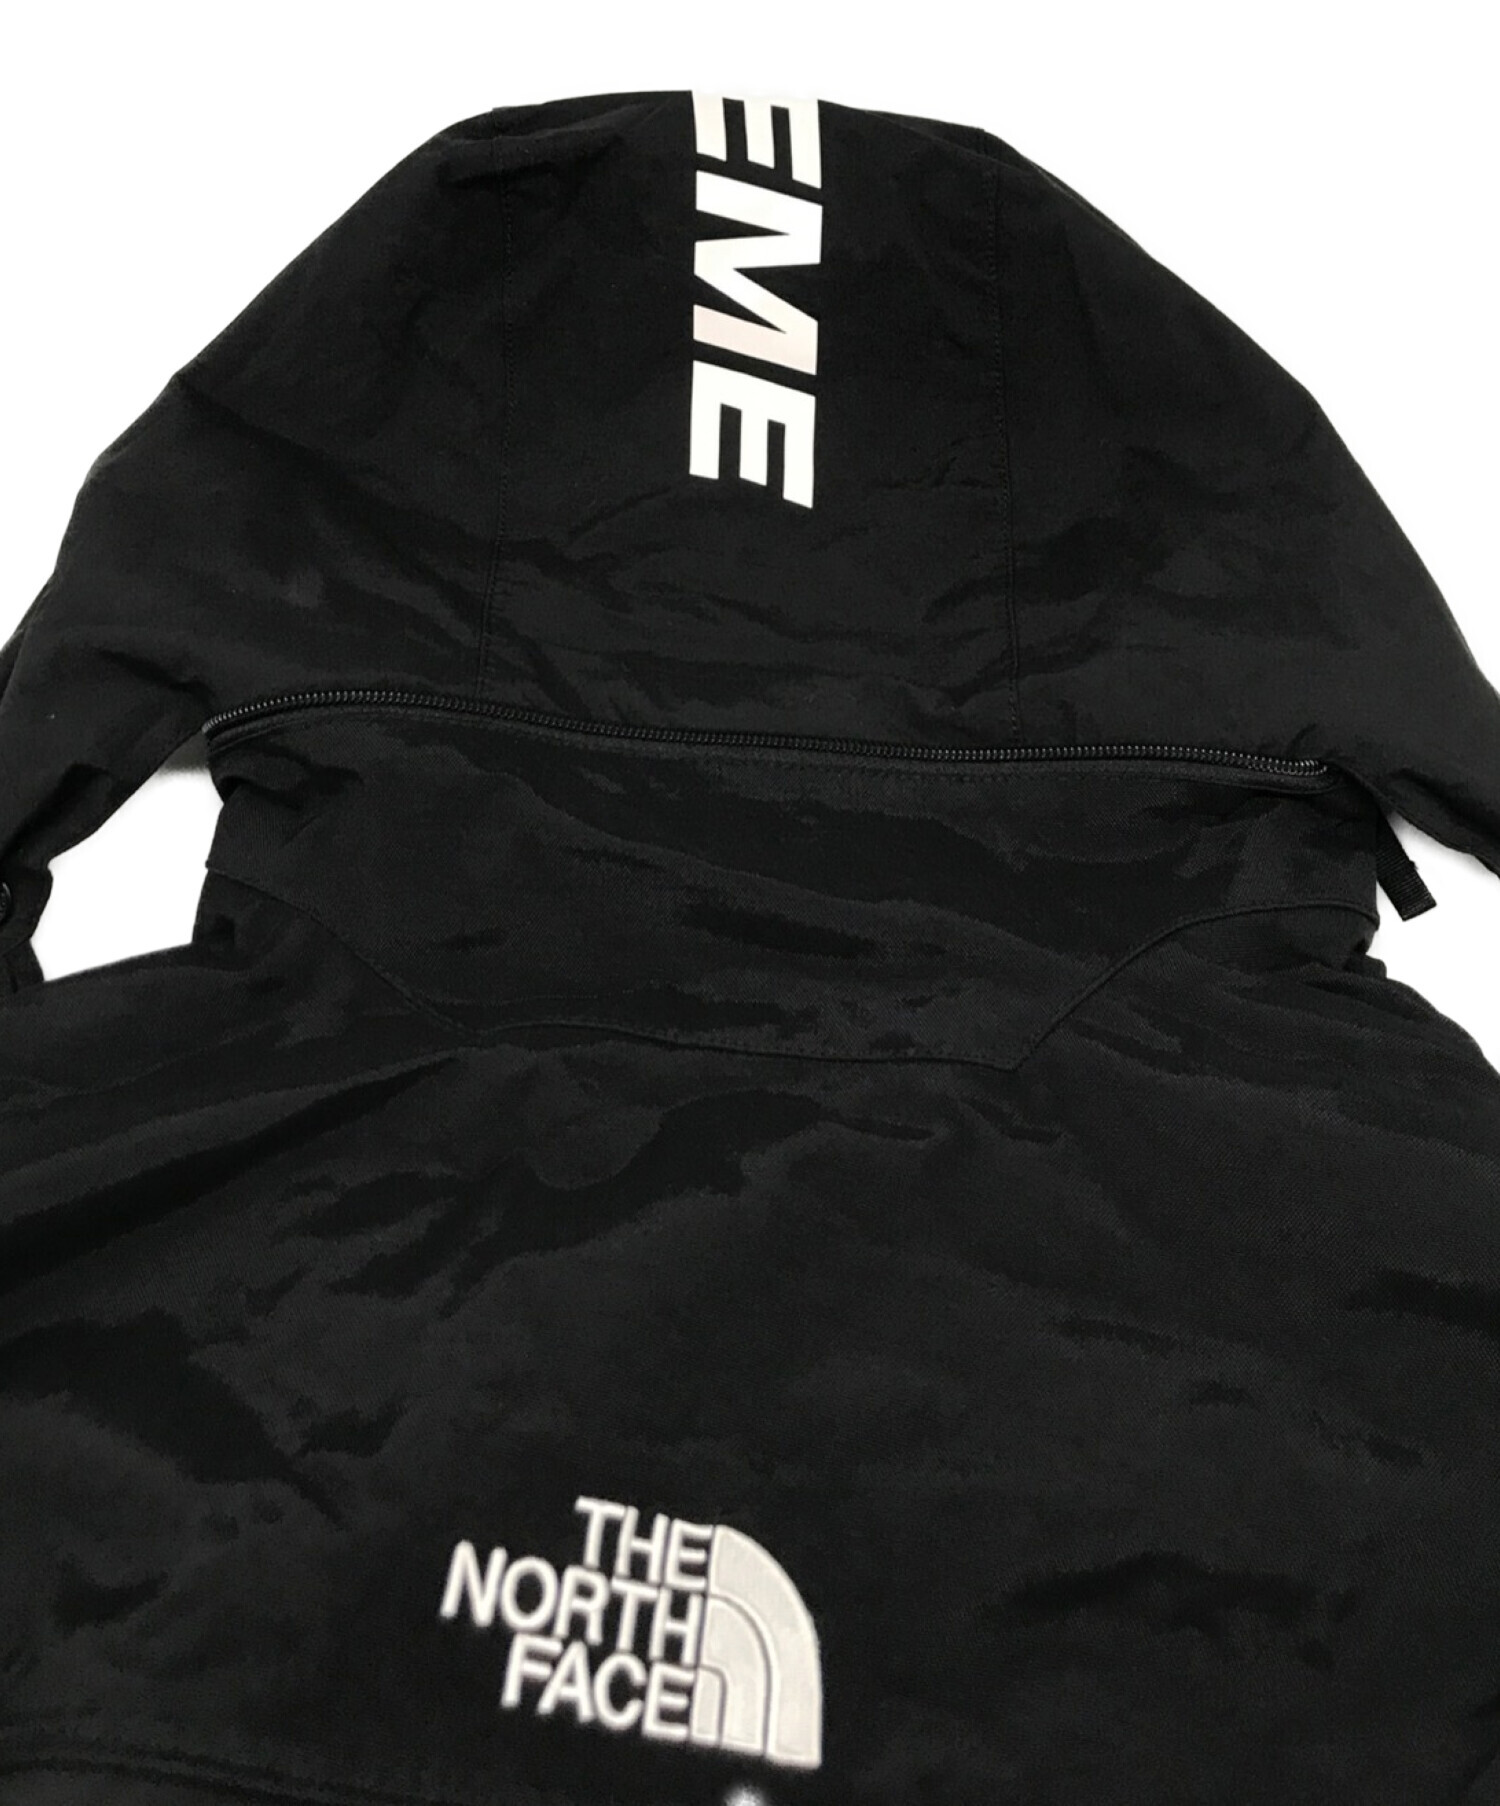 THE NORTH FACE × Supreme (ザノースフェイス×シュプリーム) 16SS Steep Tech Hooded Jacket  スティープ テック フーディー ジャケット ブラック サイズ:S